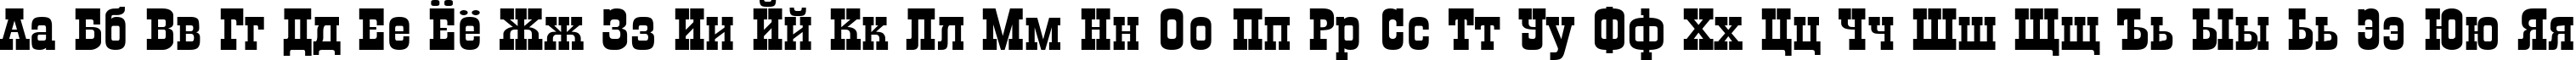 Пример написания русского алфавита шрифтом a_GildiaExp Bold